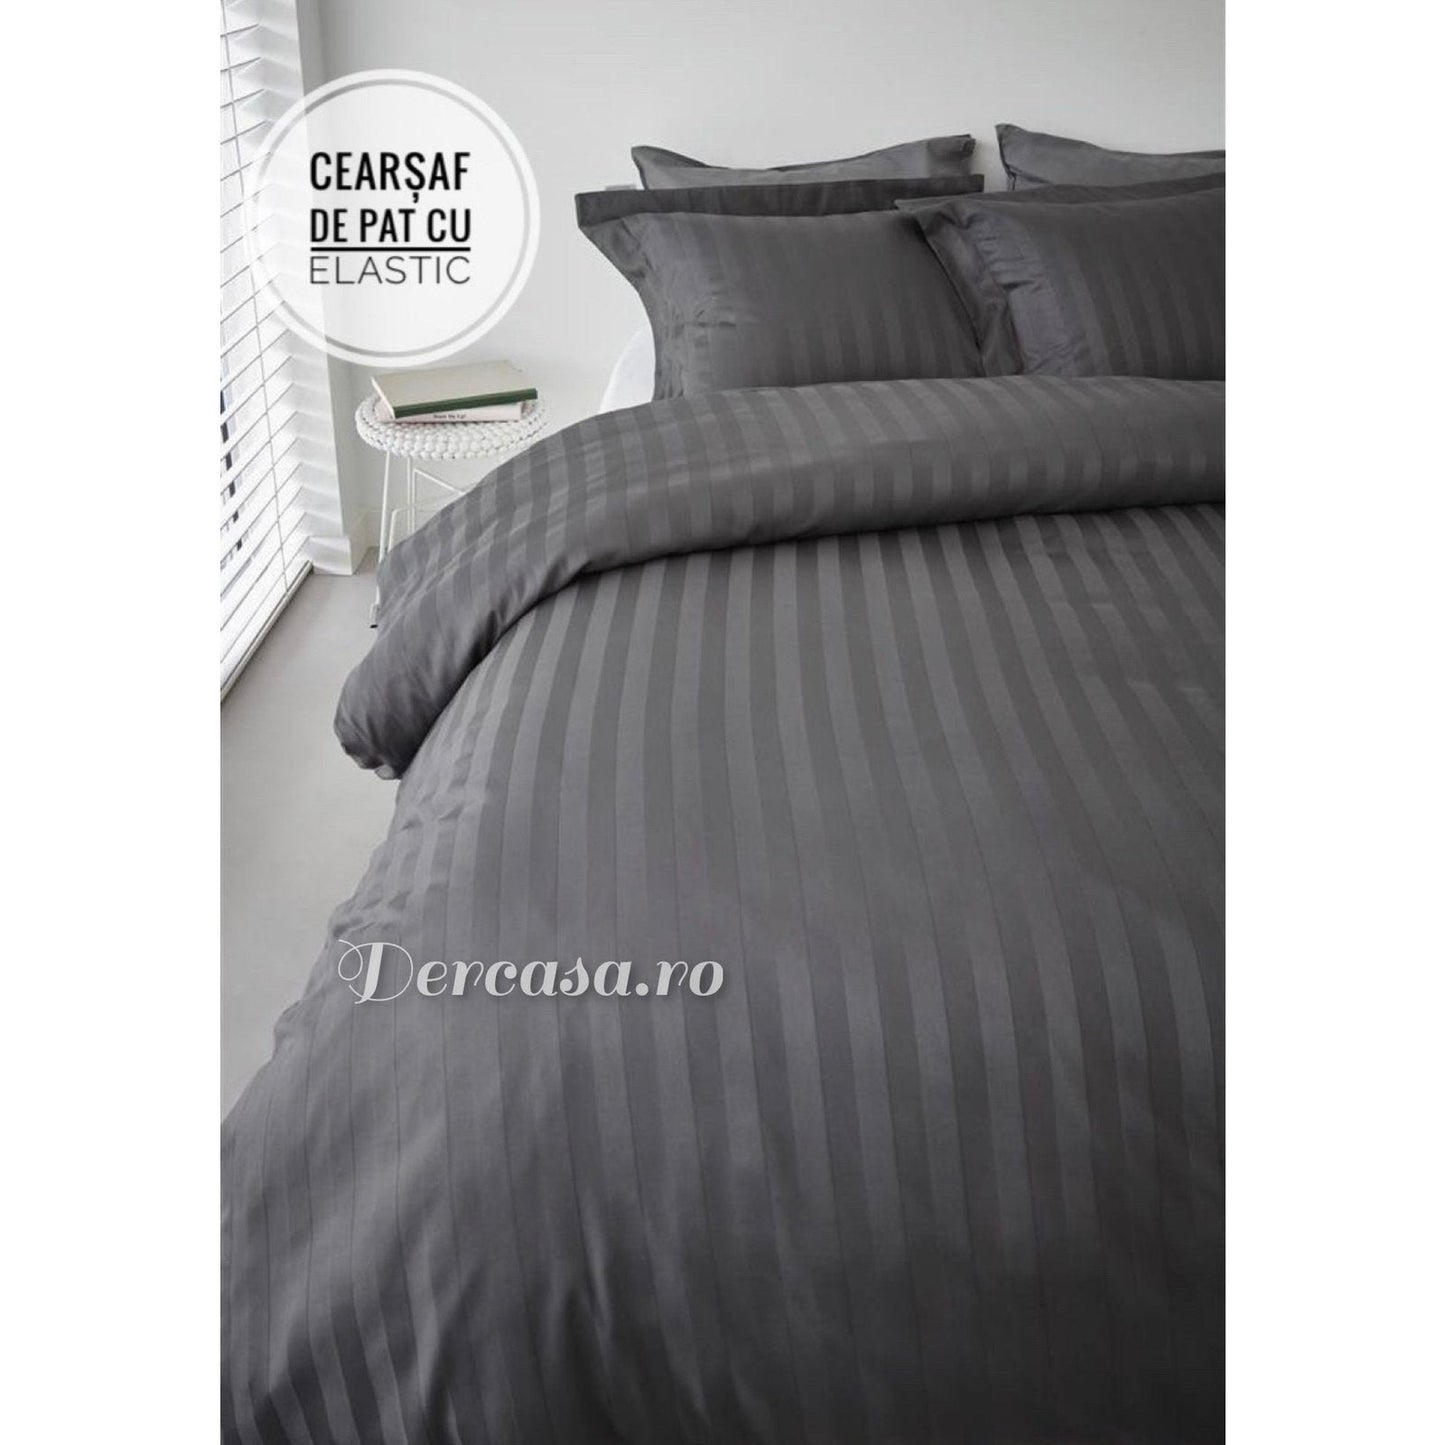 Lenjerie de Lux din Damasc Finetat Deluxe cu 6 piese-cearșaf de pat cu elastic Cod: DAE46